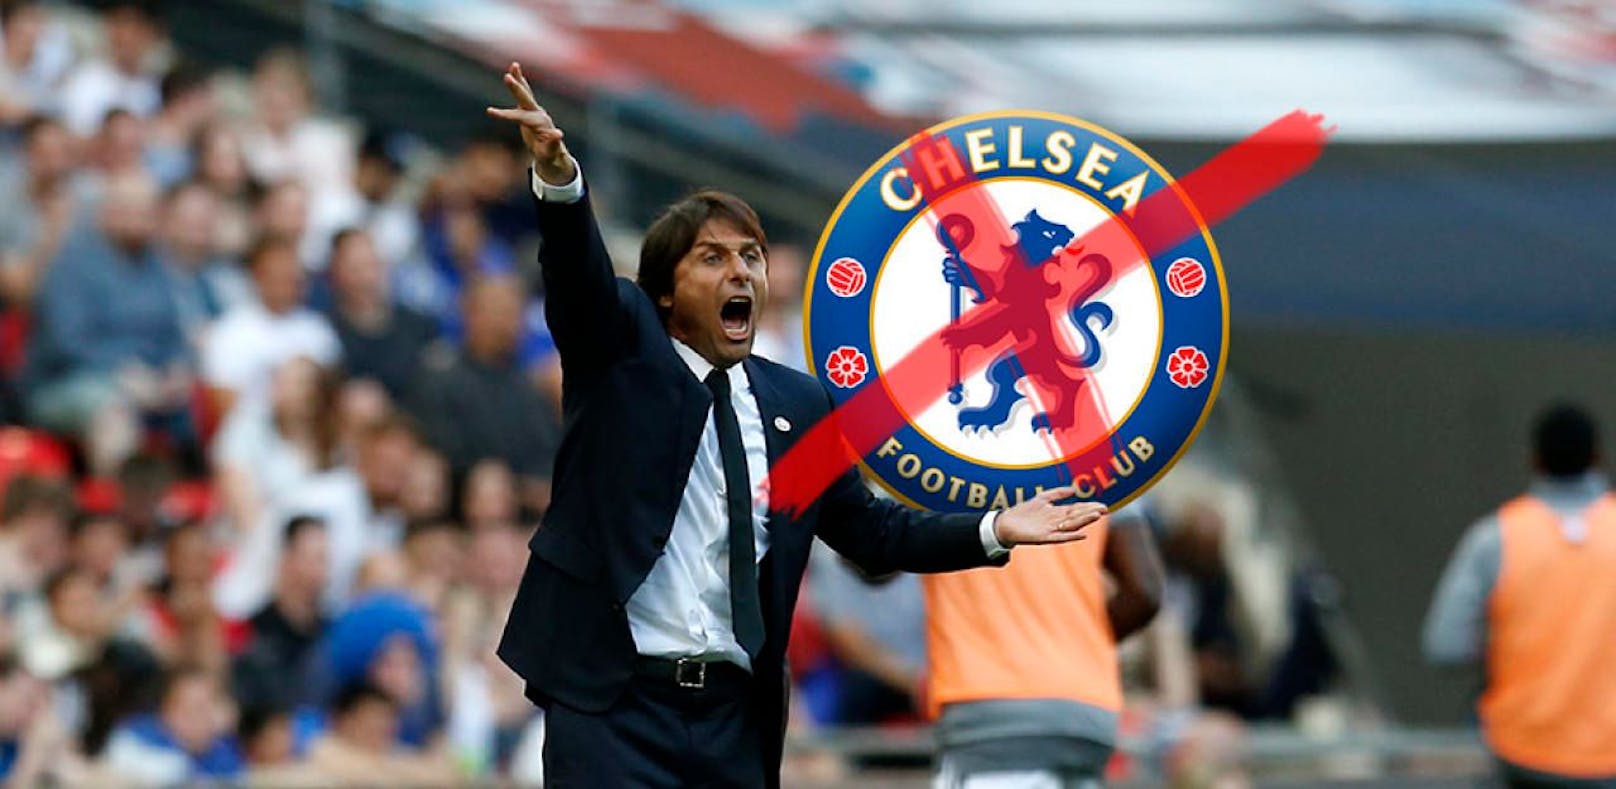 Fix! Chelsea feuert Trainer Conte, kommt jetzt Sarri?